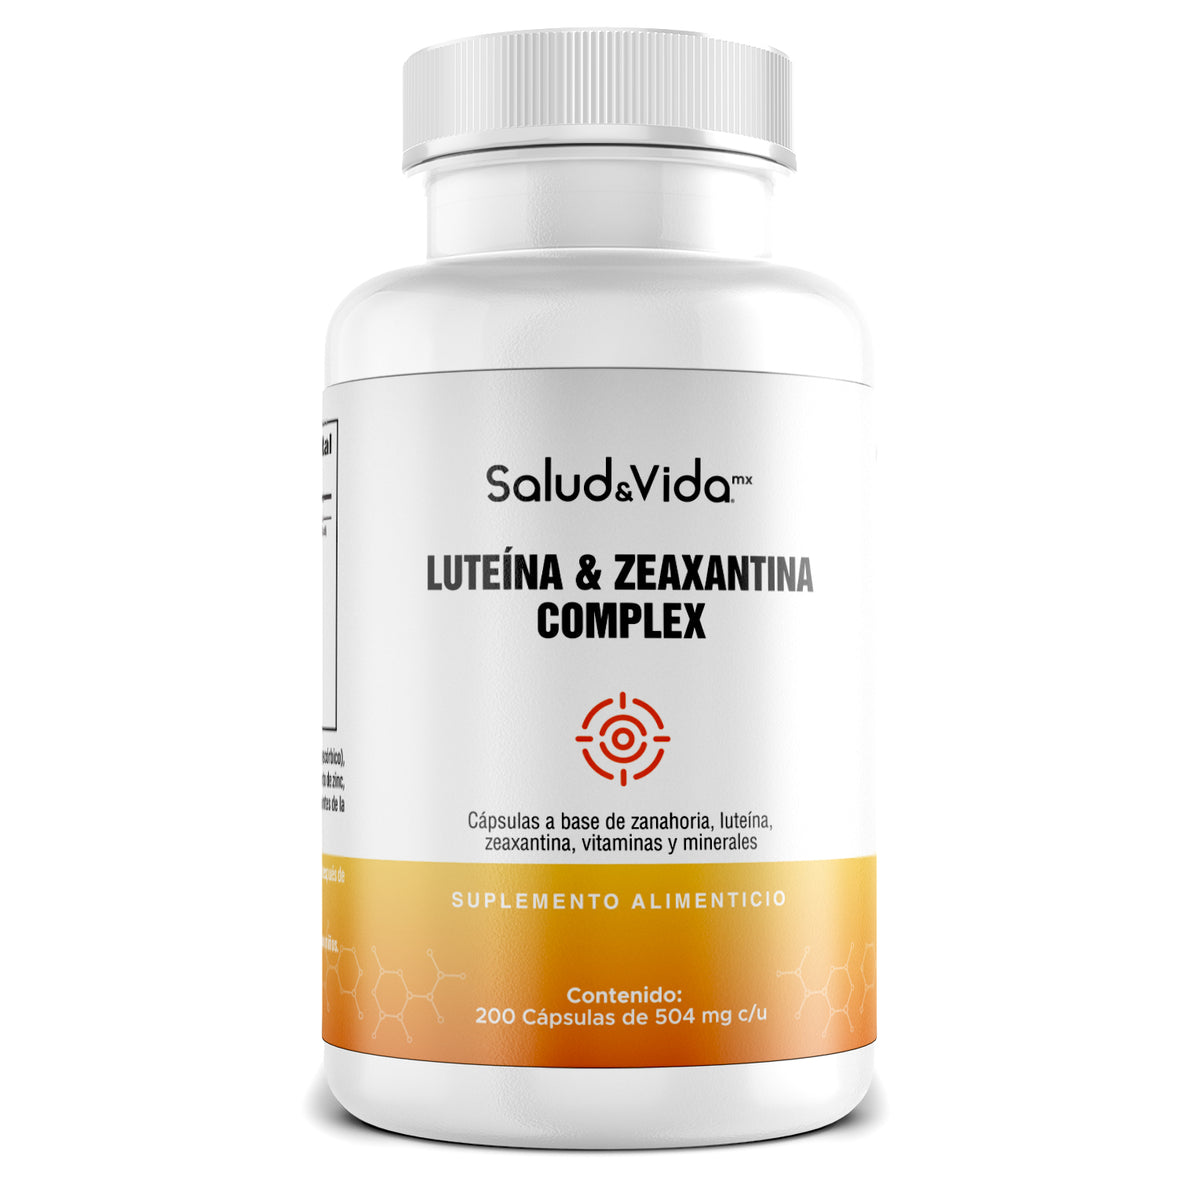 Complejo de Luteína y Zeaxantina con Vitaminas y minerales - Focus 504mg